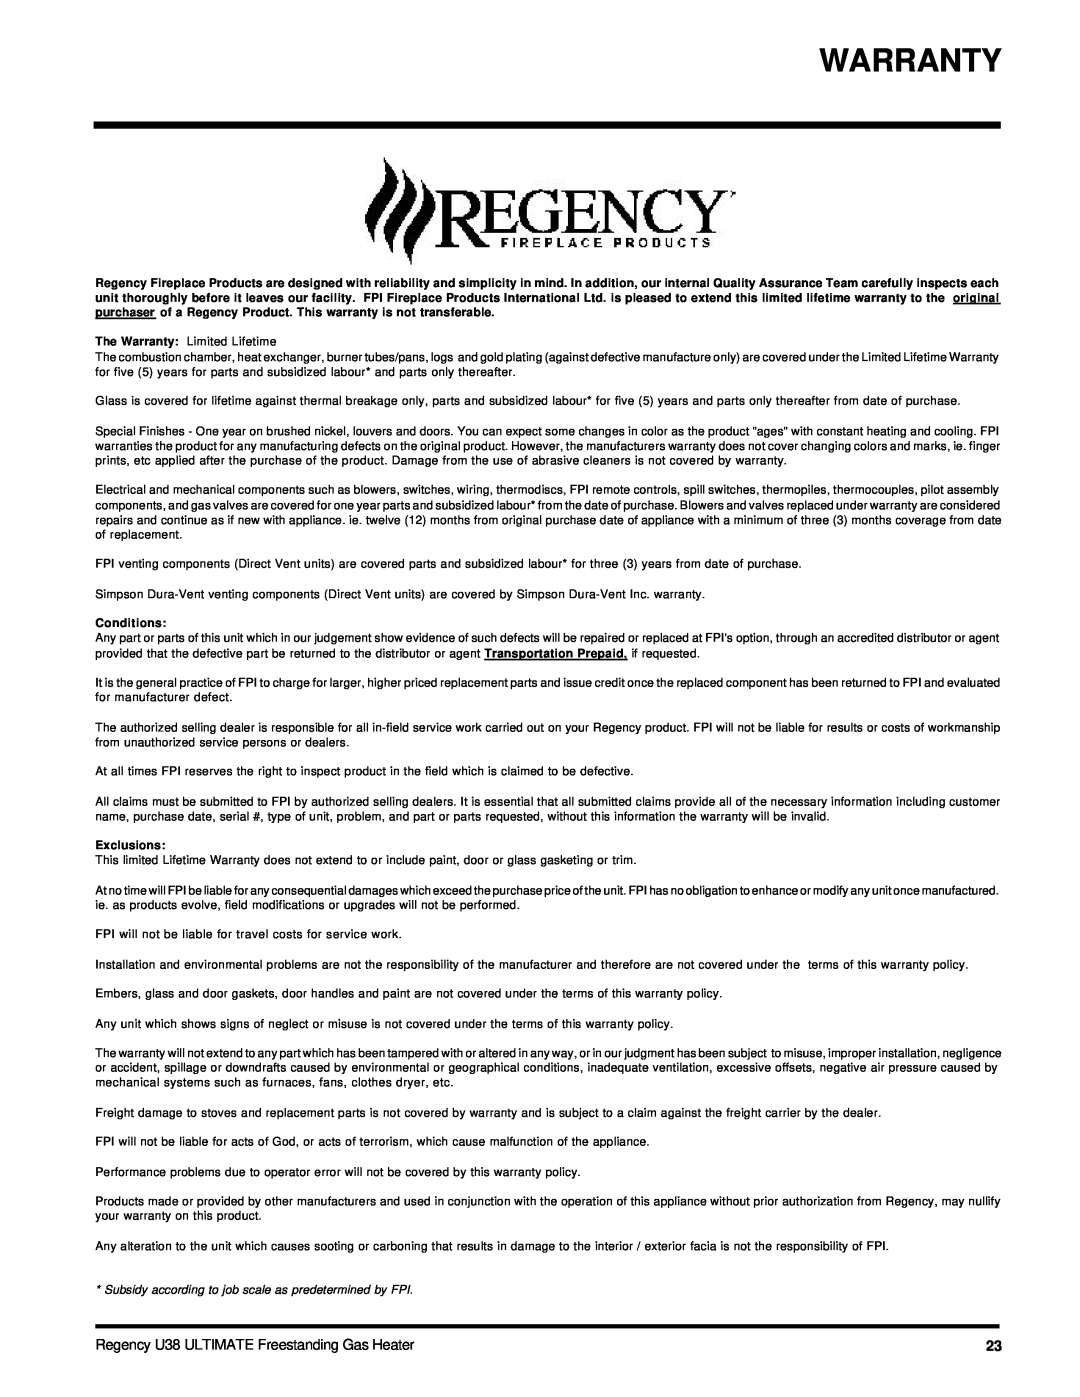 Regency U38-NG, U38-LP installation manual Warranty, Conditions, Exclusions 